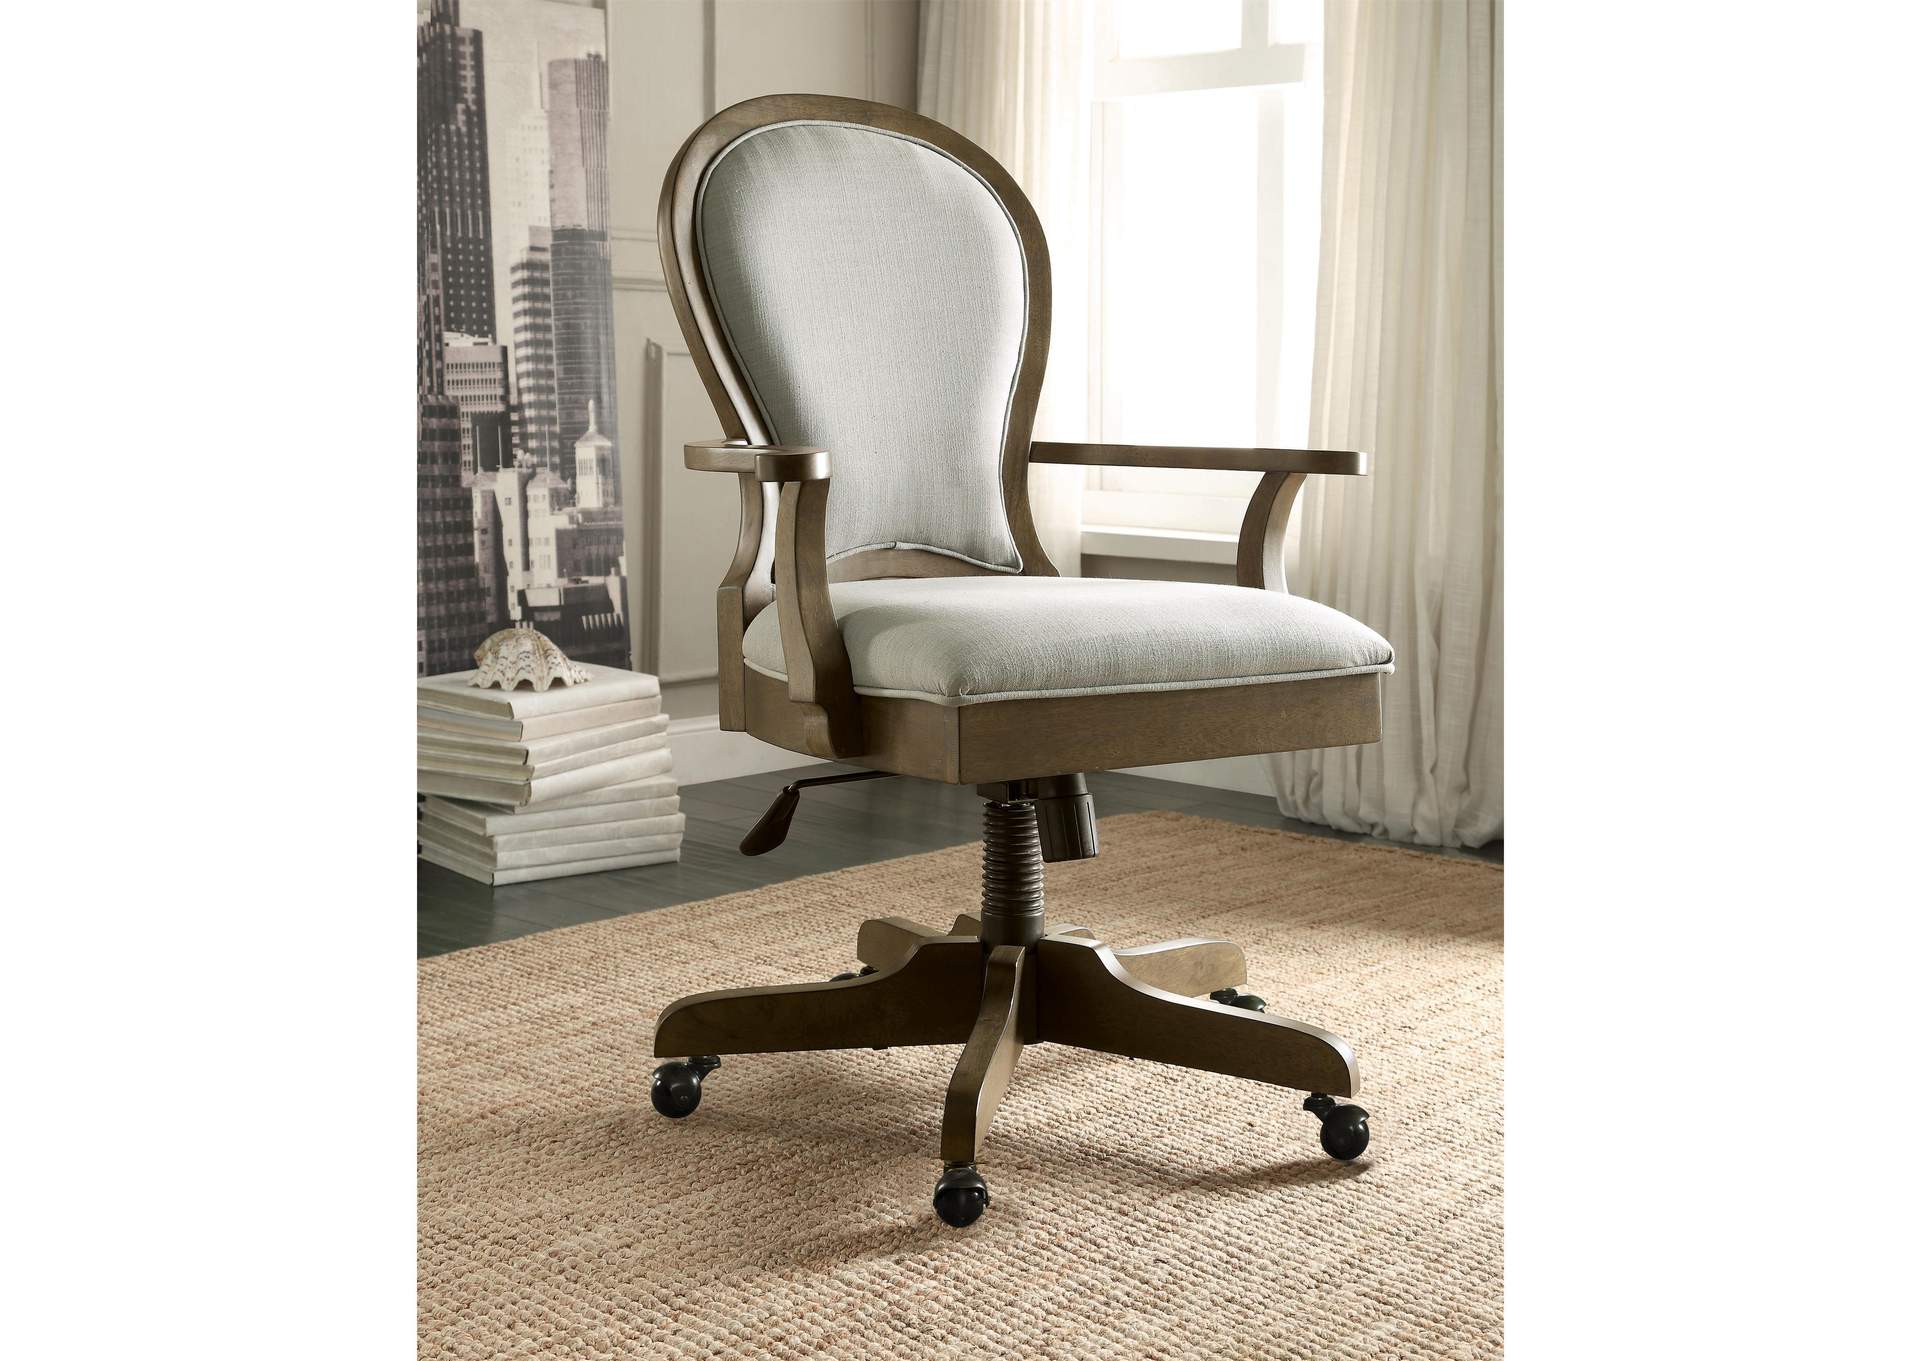 Belmeade Old World Oak Scrol Back Upholstered Desk Chair,Riverside